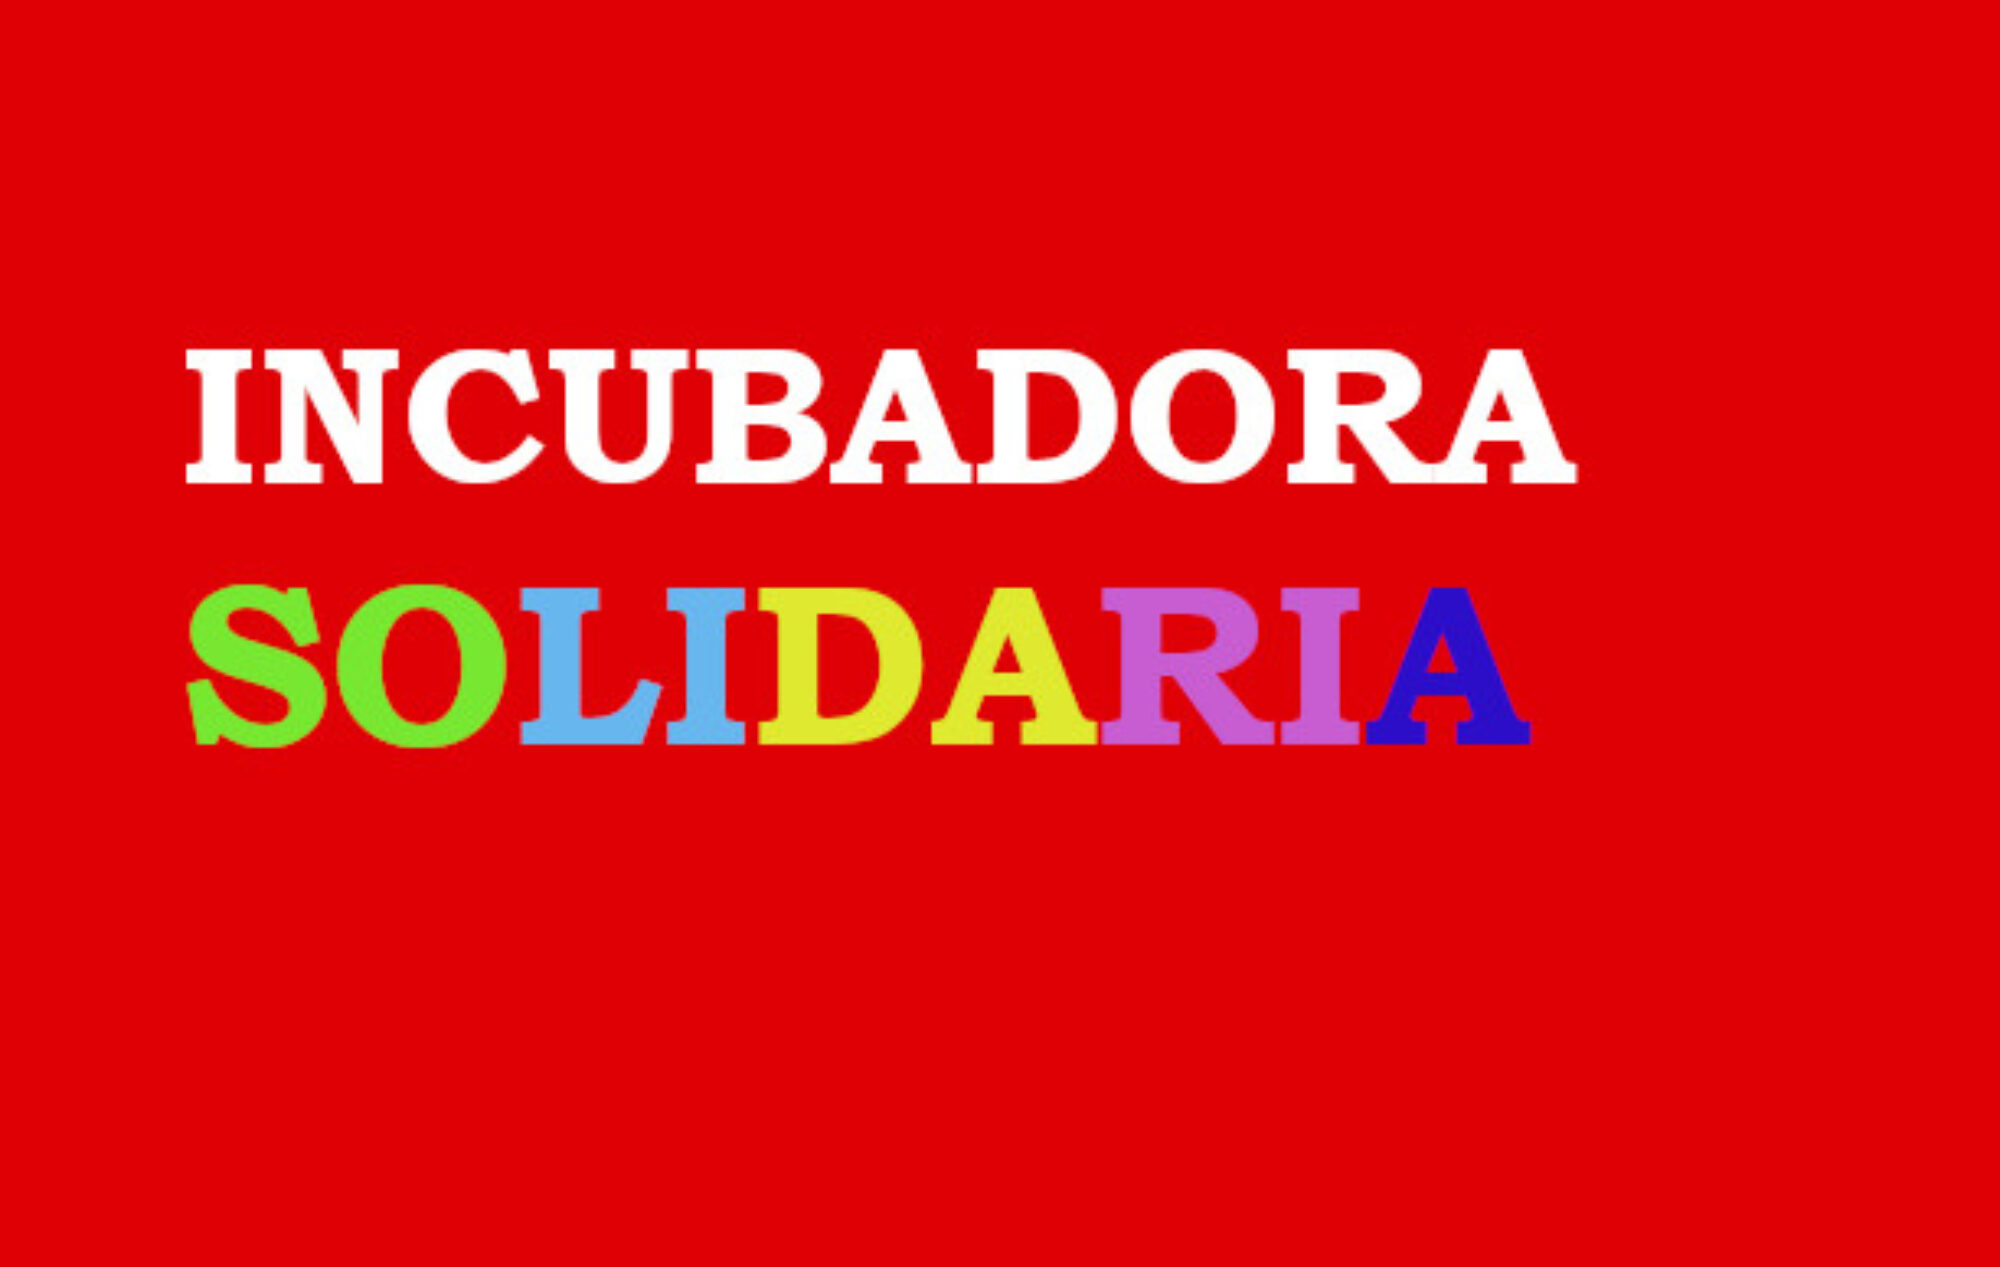 Incubadora Solidaria